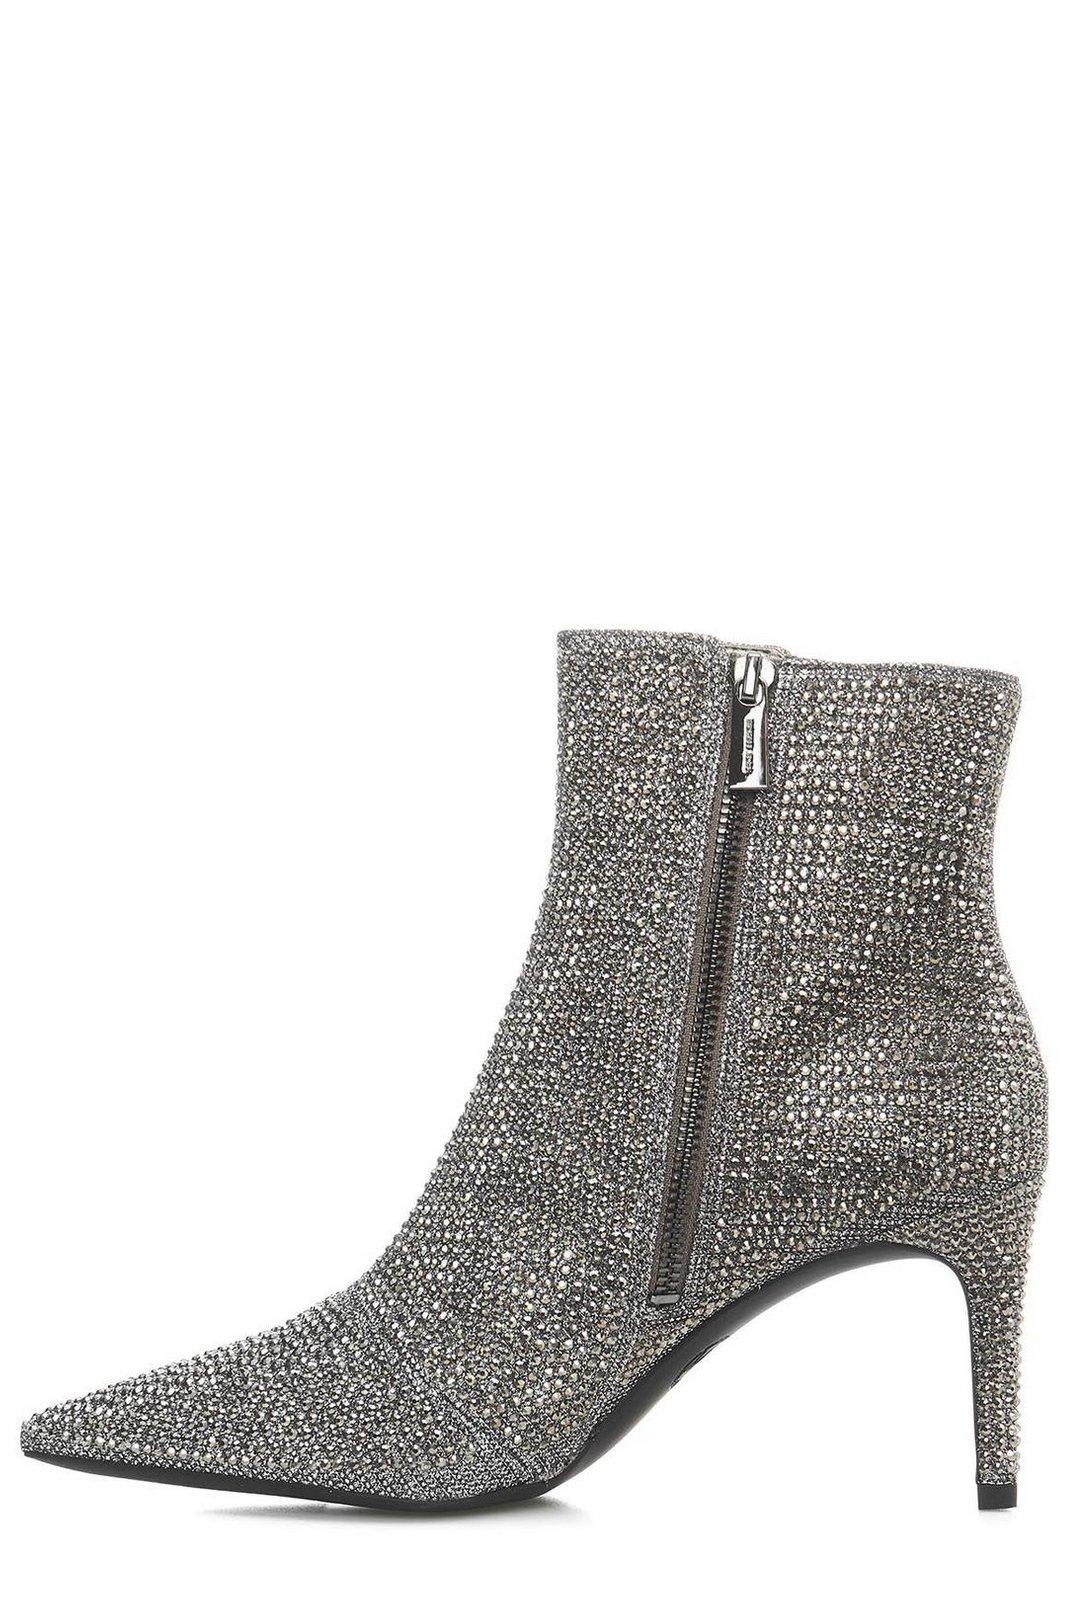 Shop Michael Kors Aline Embellished Heeled Ankle Boots In Argento